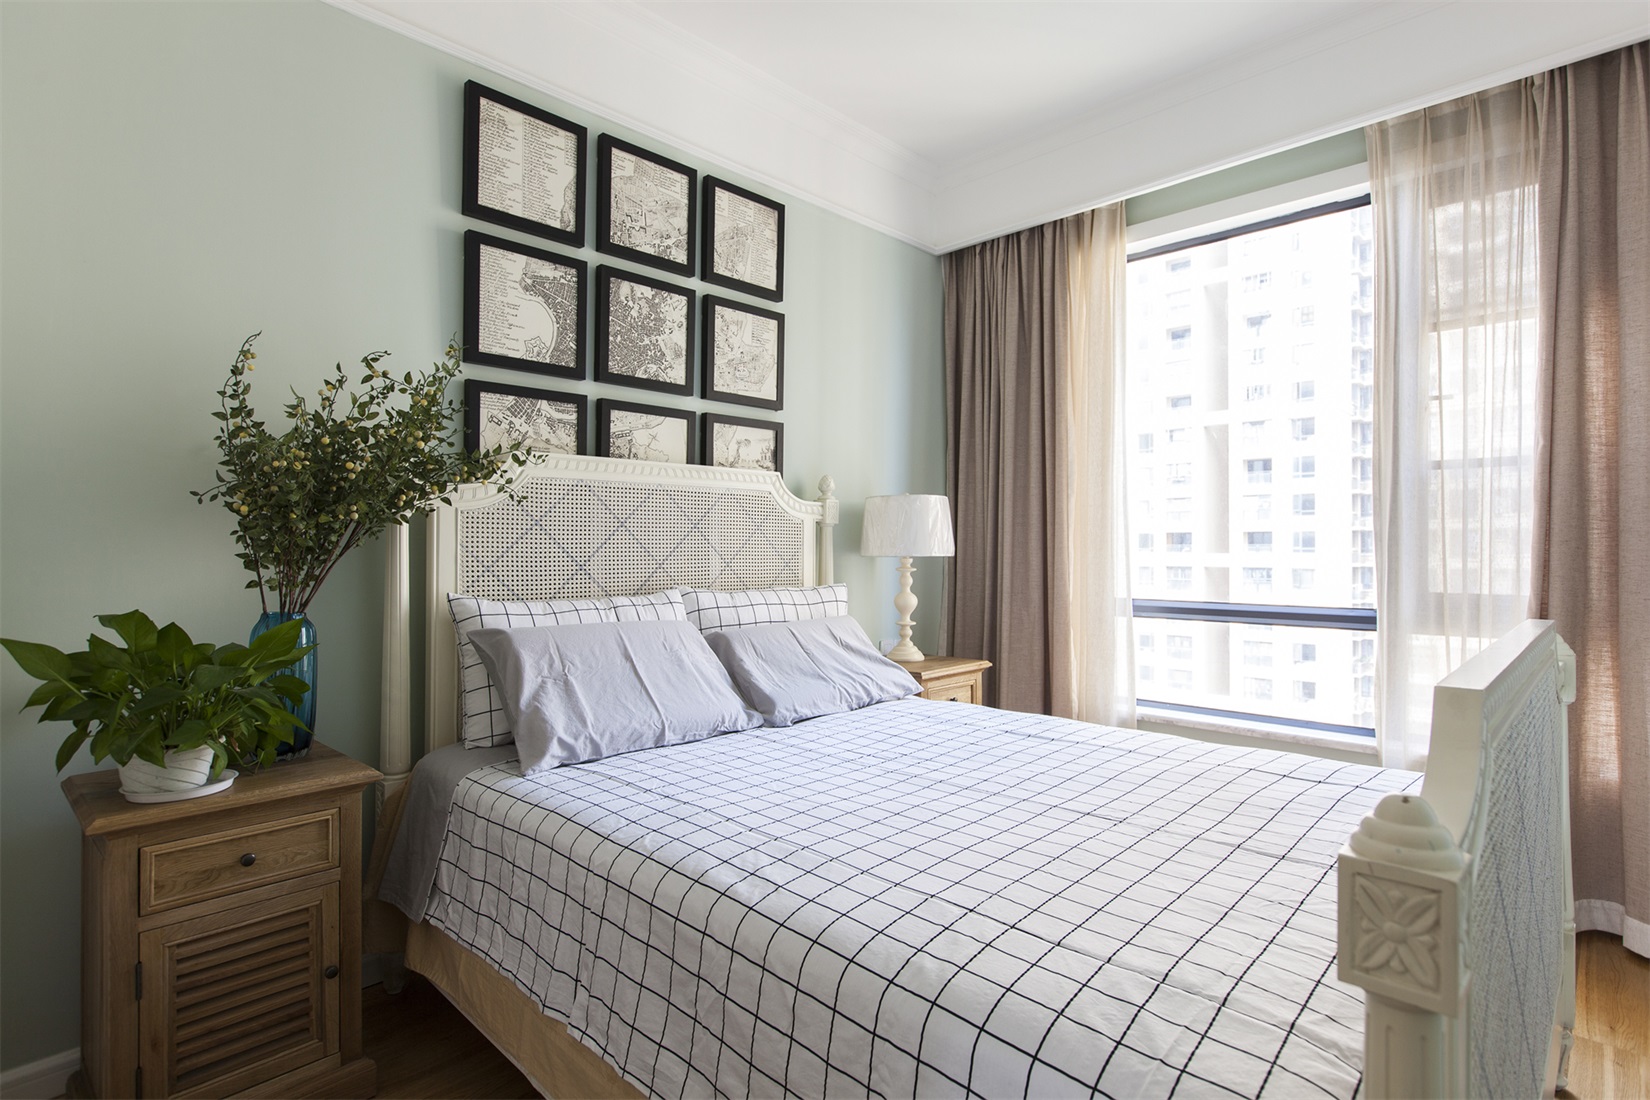 空间设计简约而富有层次感，床头背景墙相框装饰的手法，与床品格子造型相互呼应。